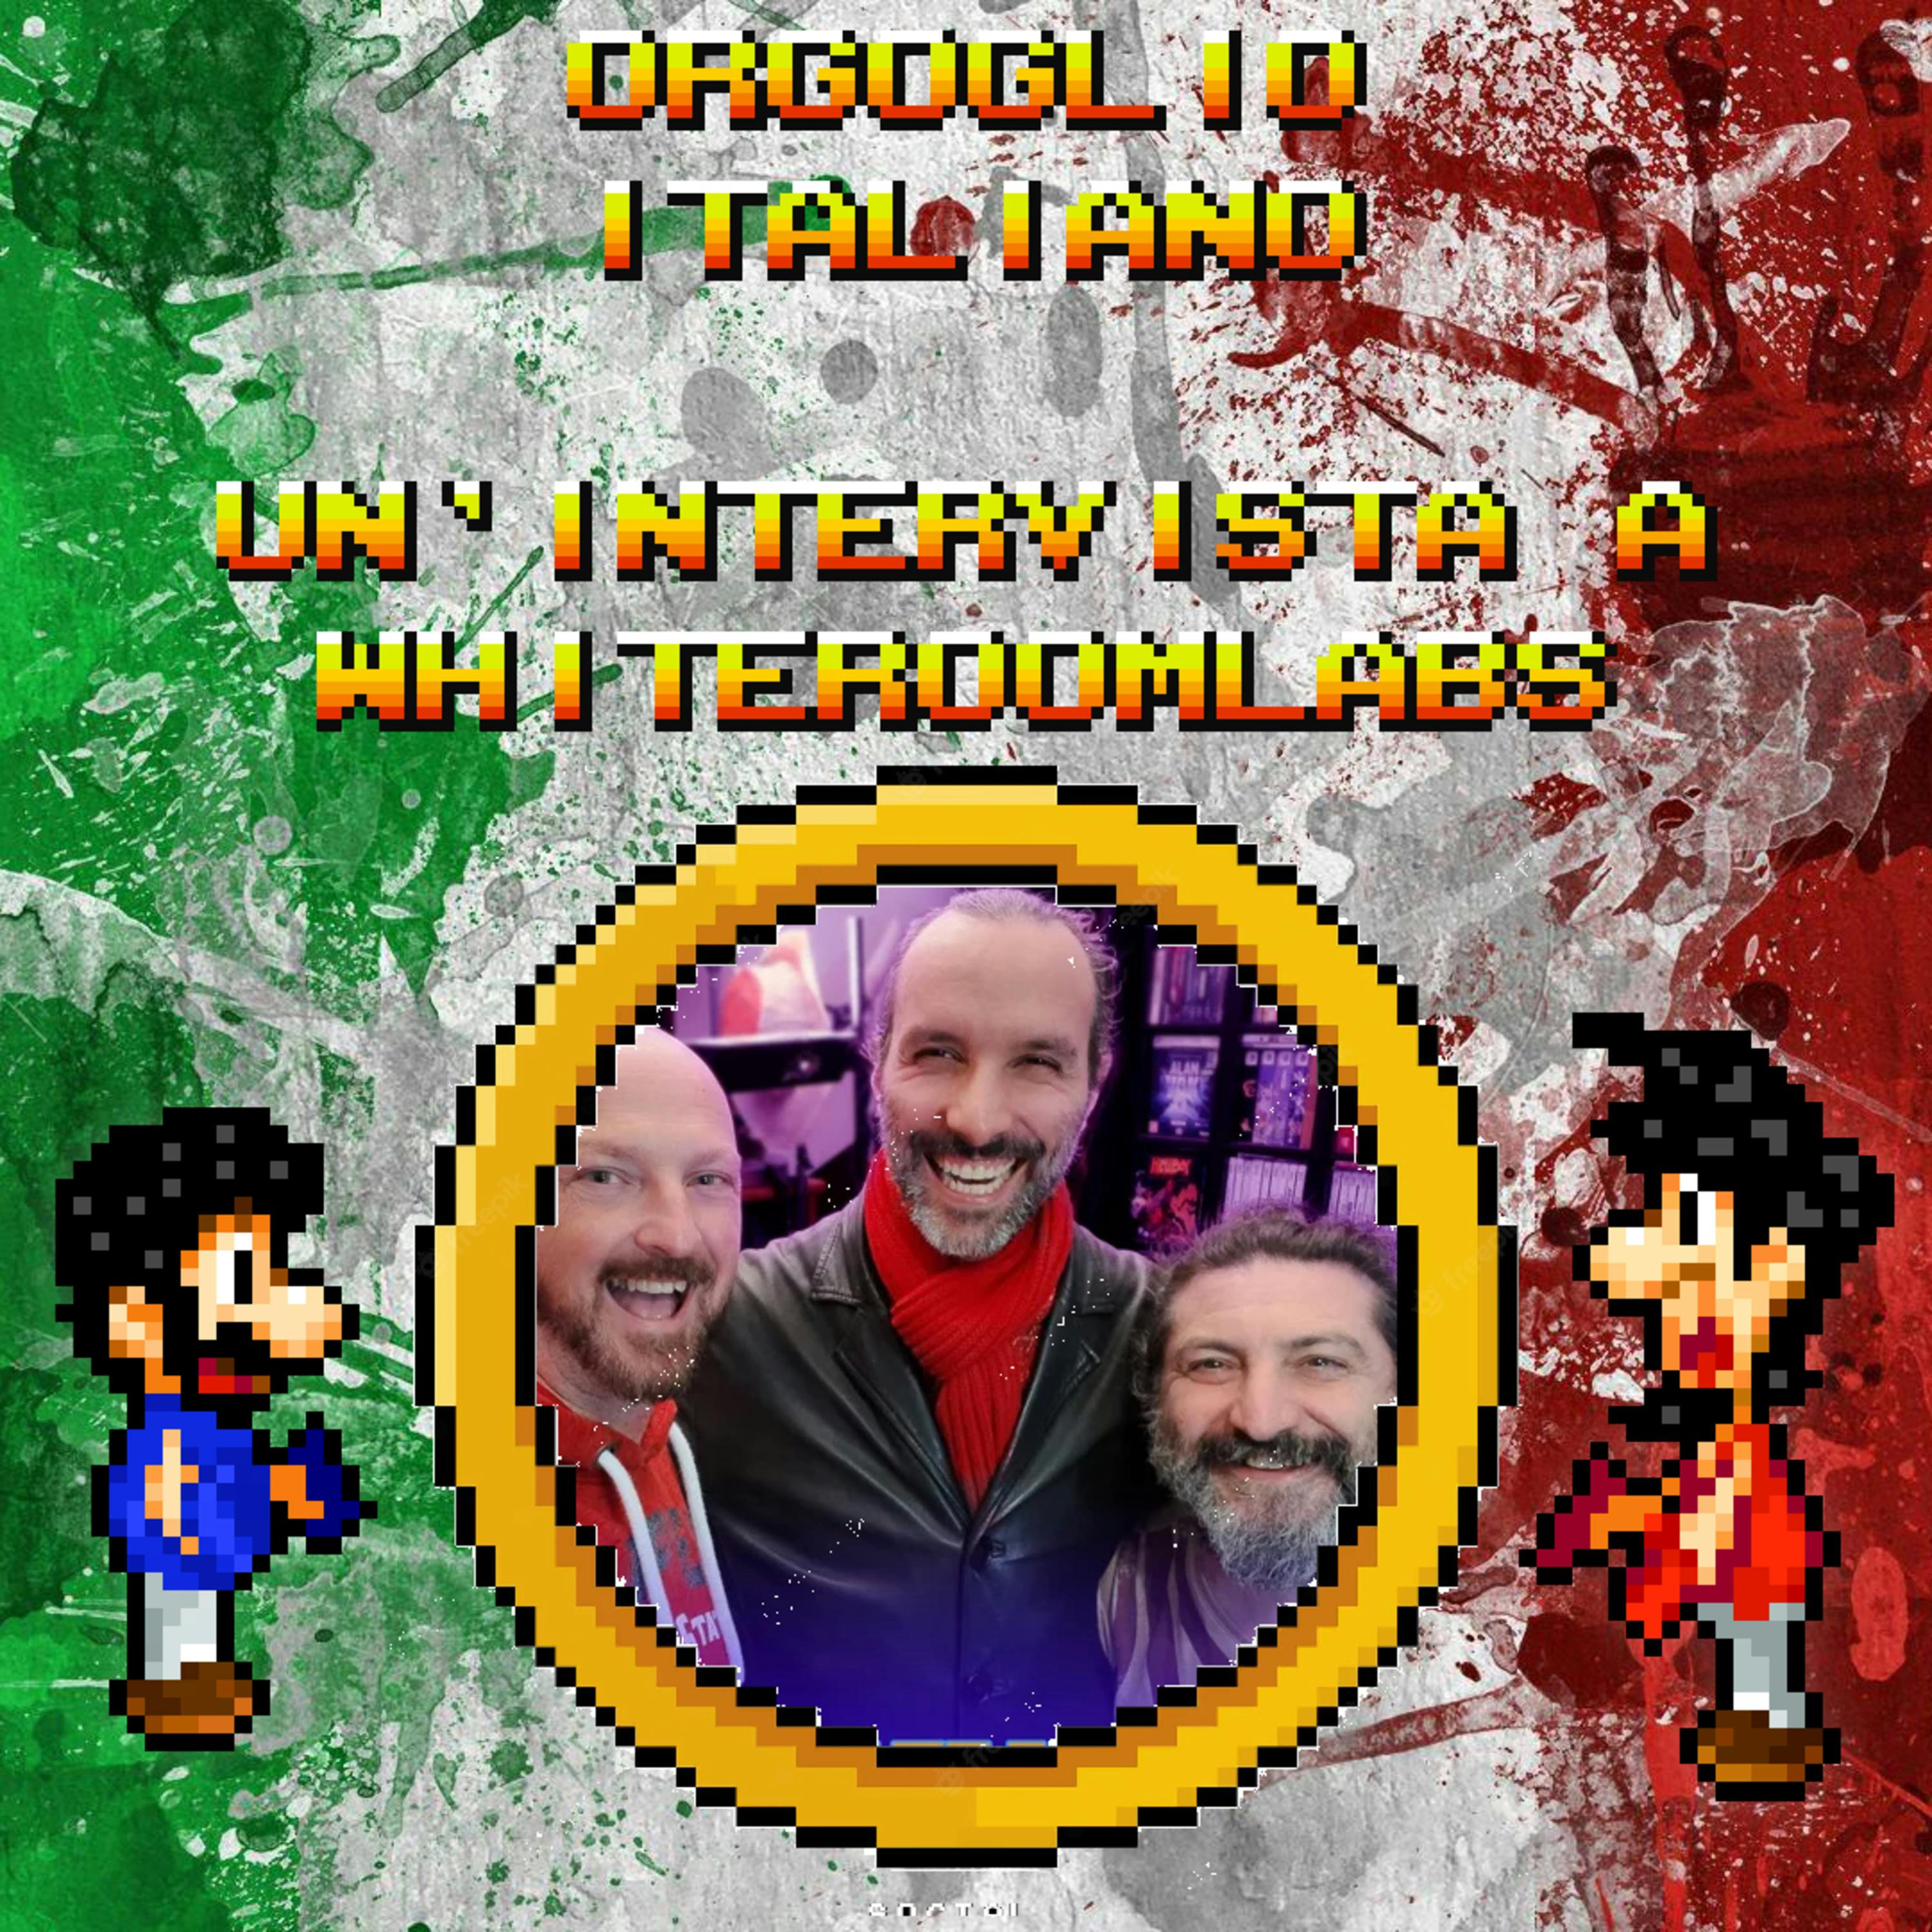 Orgoglio Italiano - Un'intervista a WhiteRoom